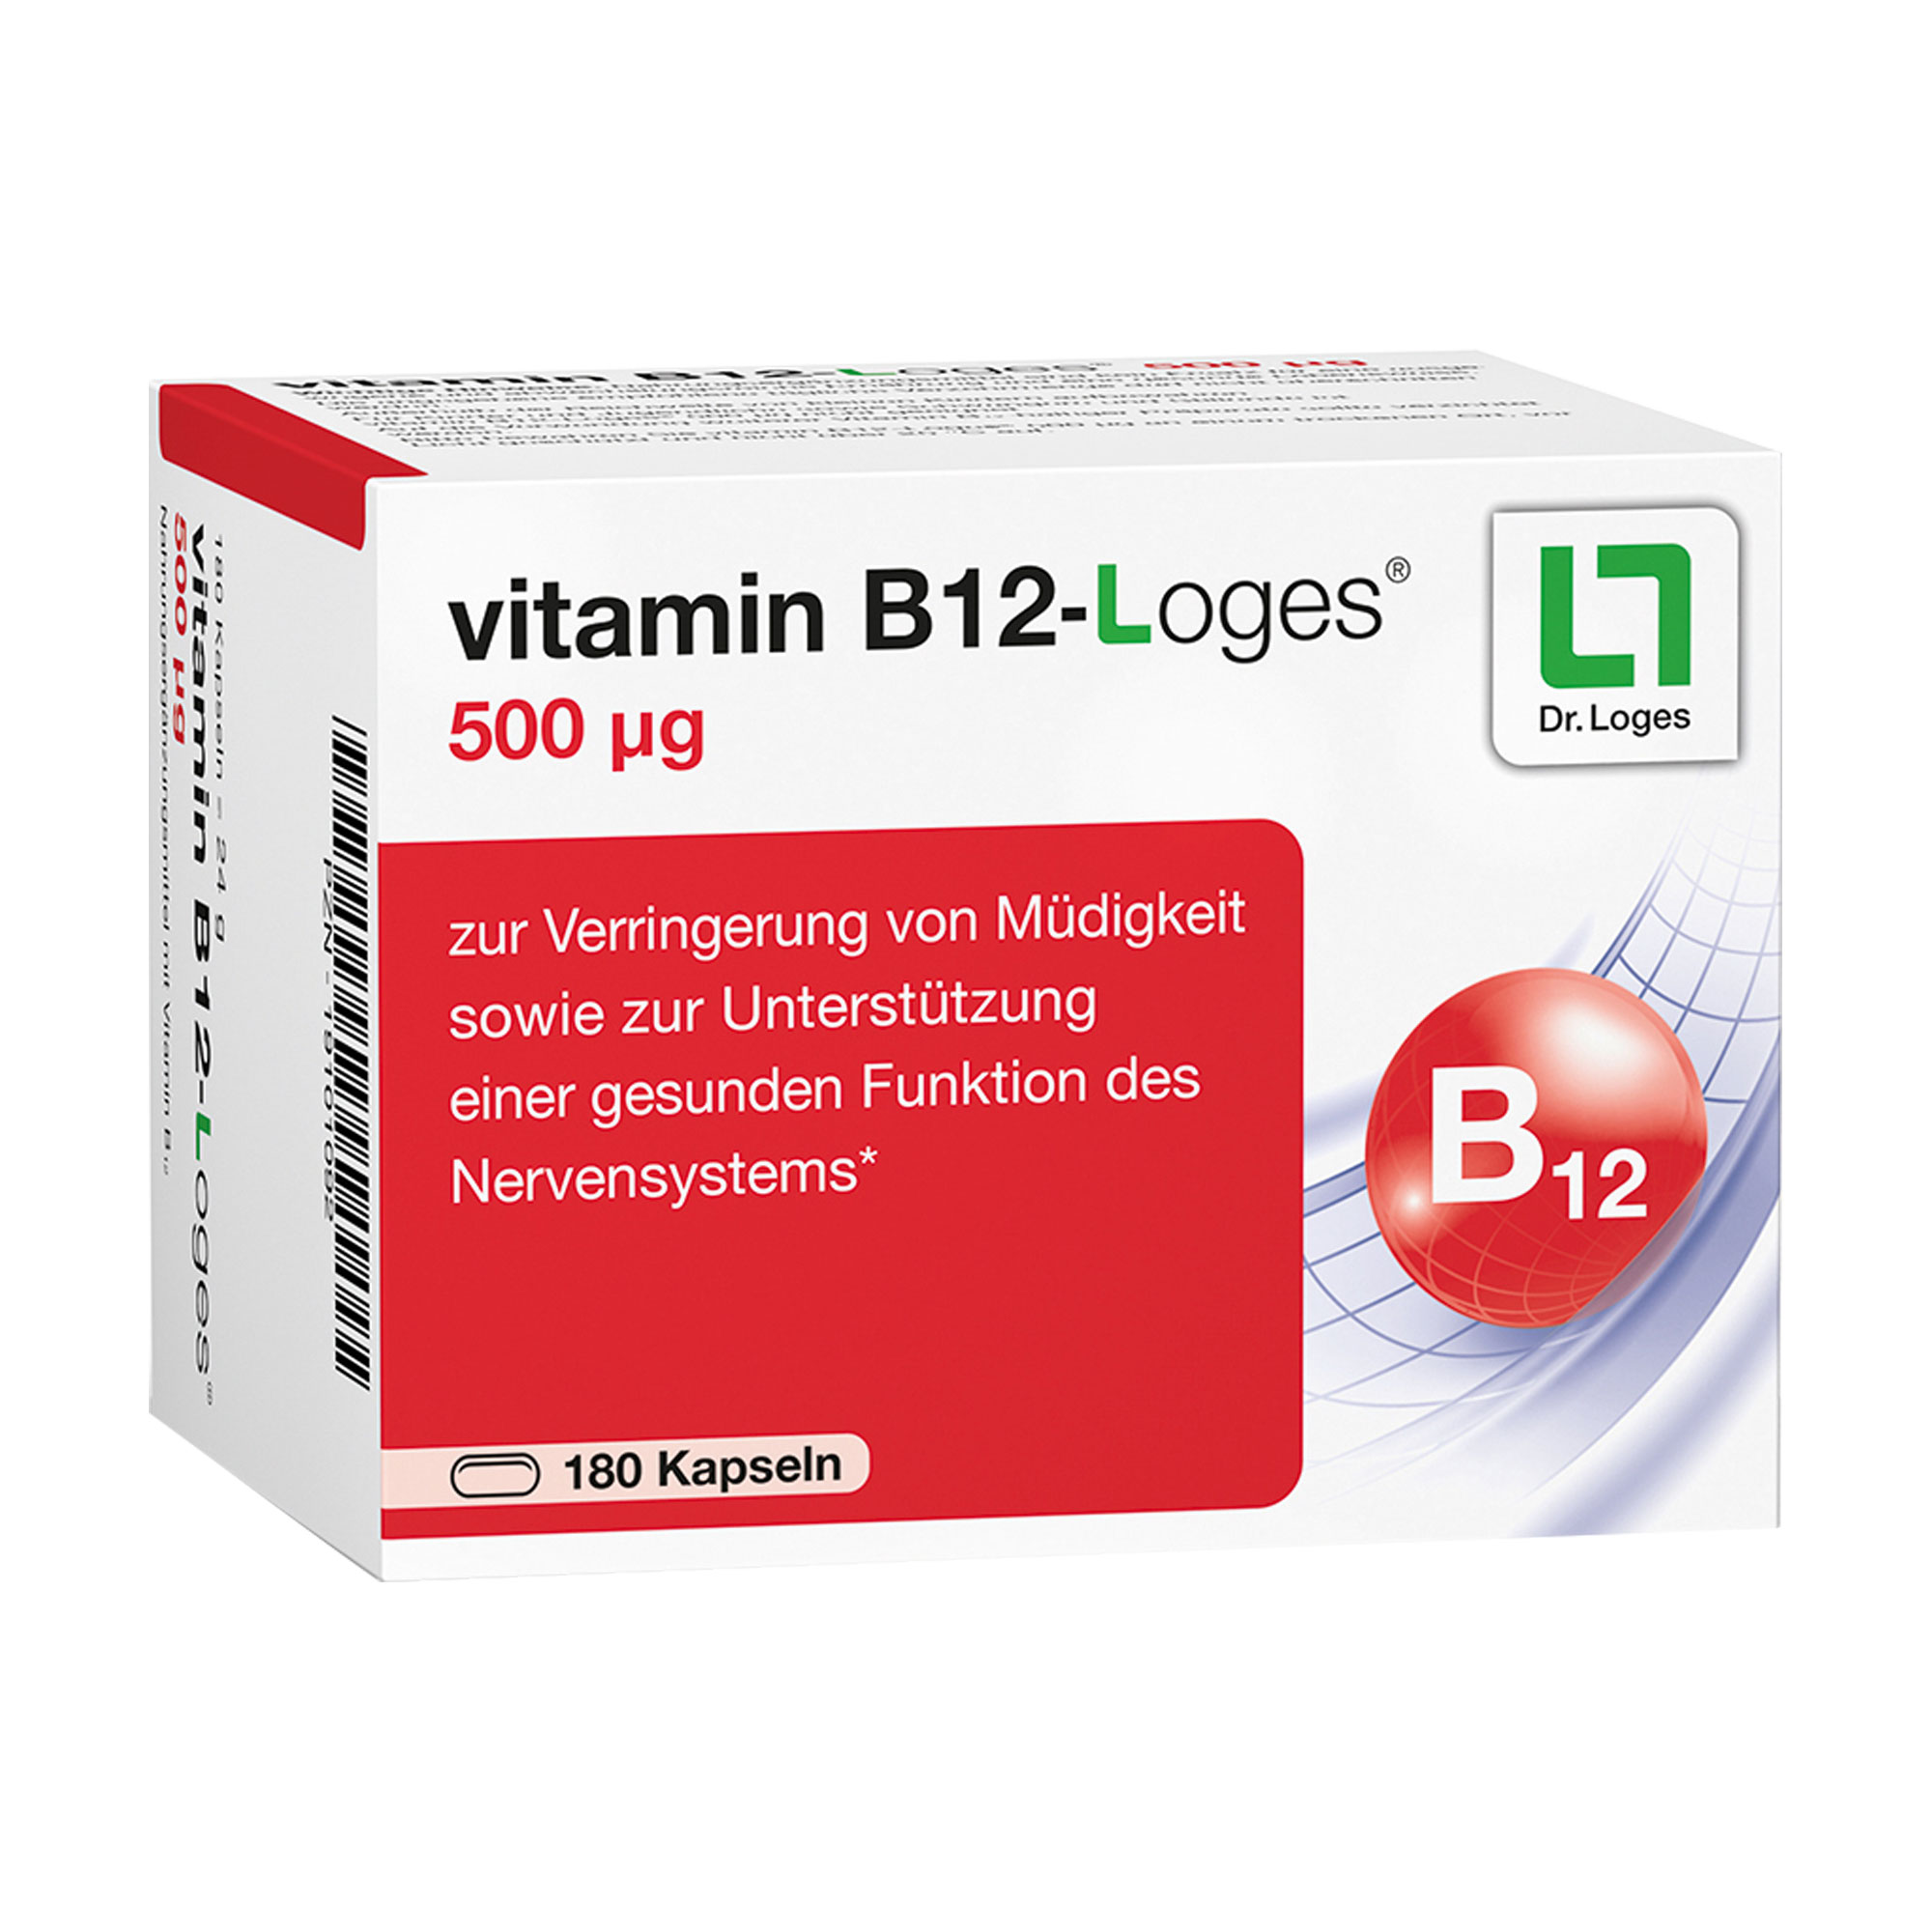 Nahrungsergänzungsmittel zur gezielten Versorgung mit Vitamin B12.